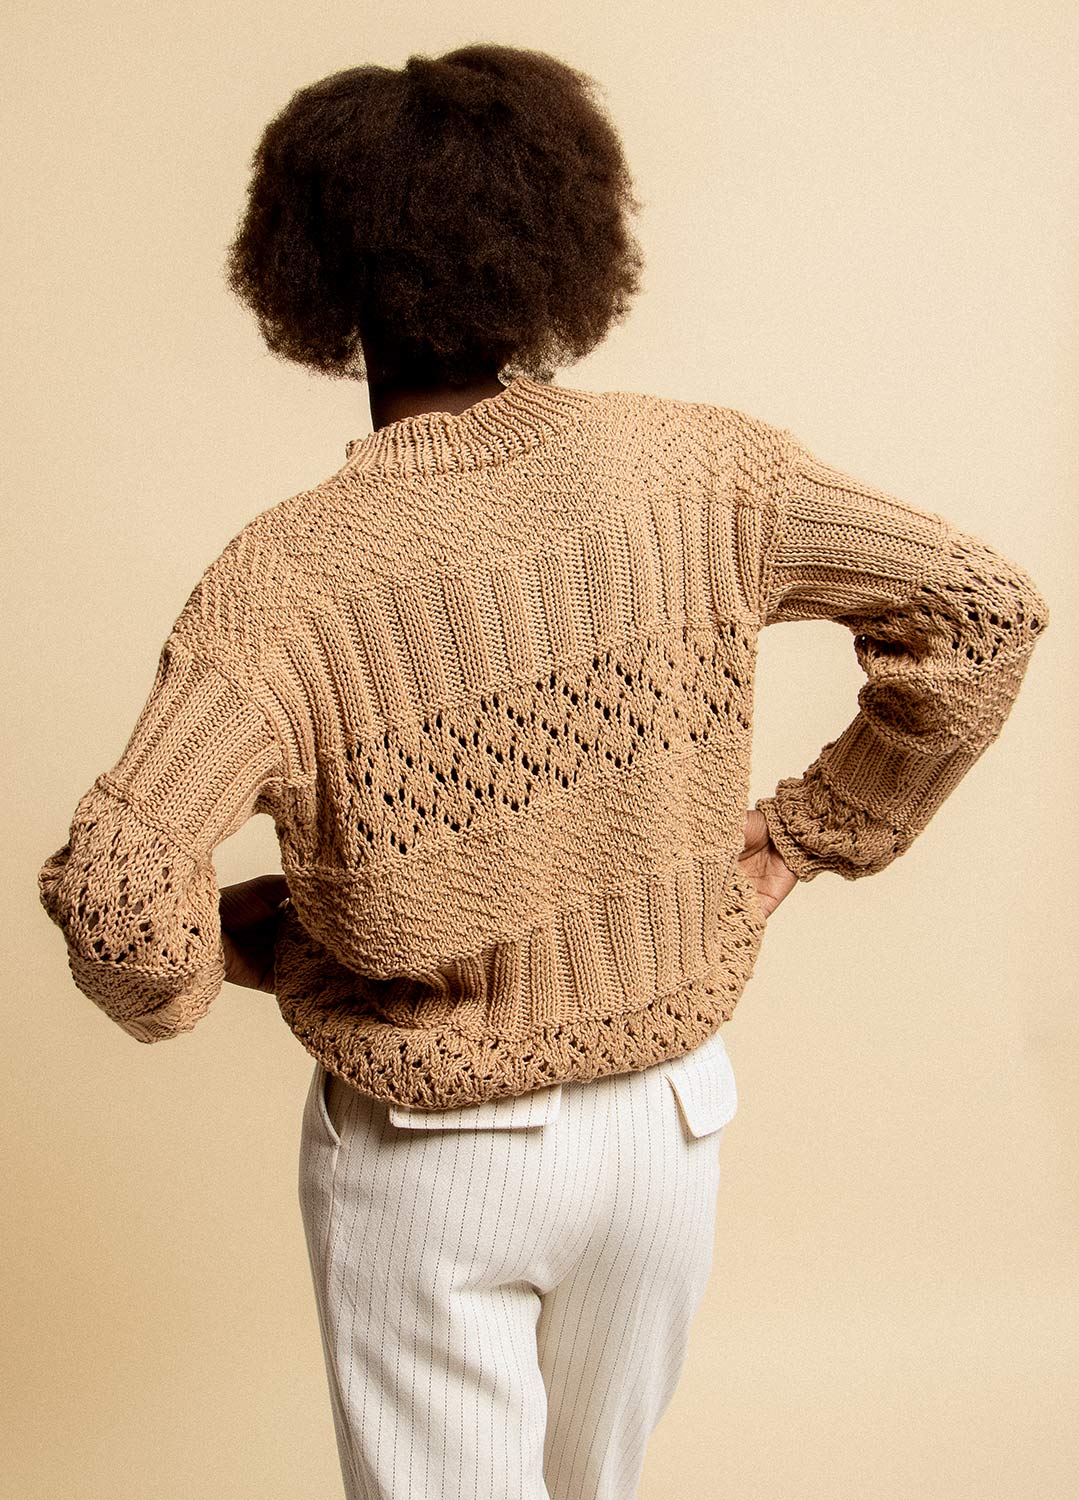 Kerbel Sweater Kit – weareknitters